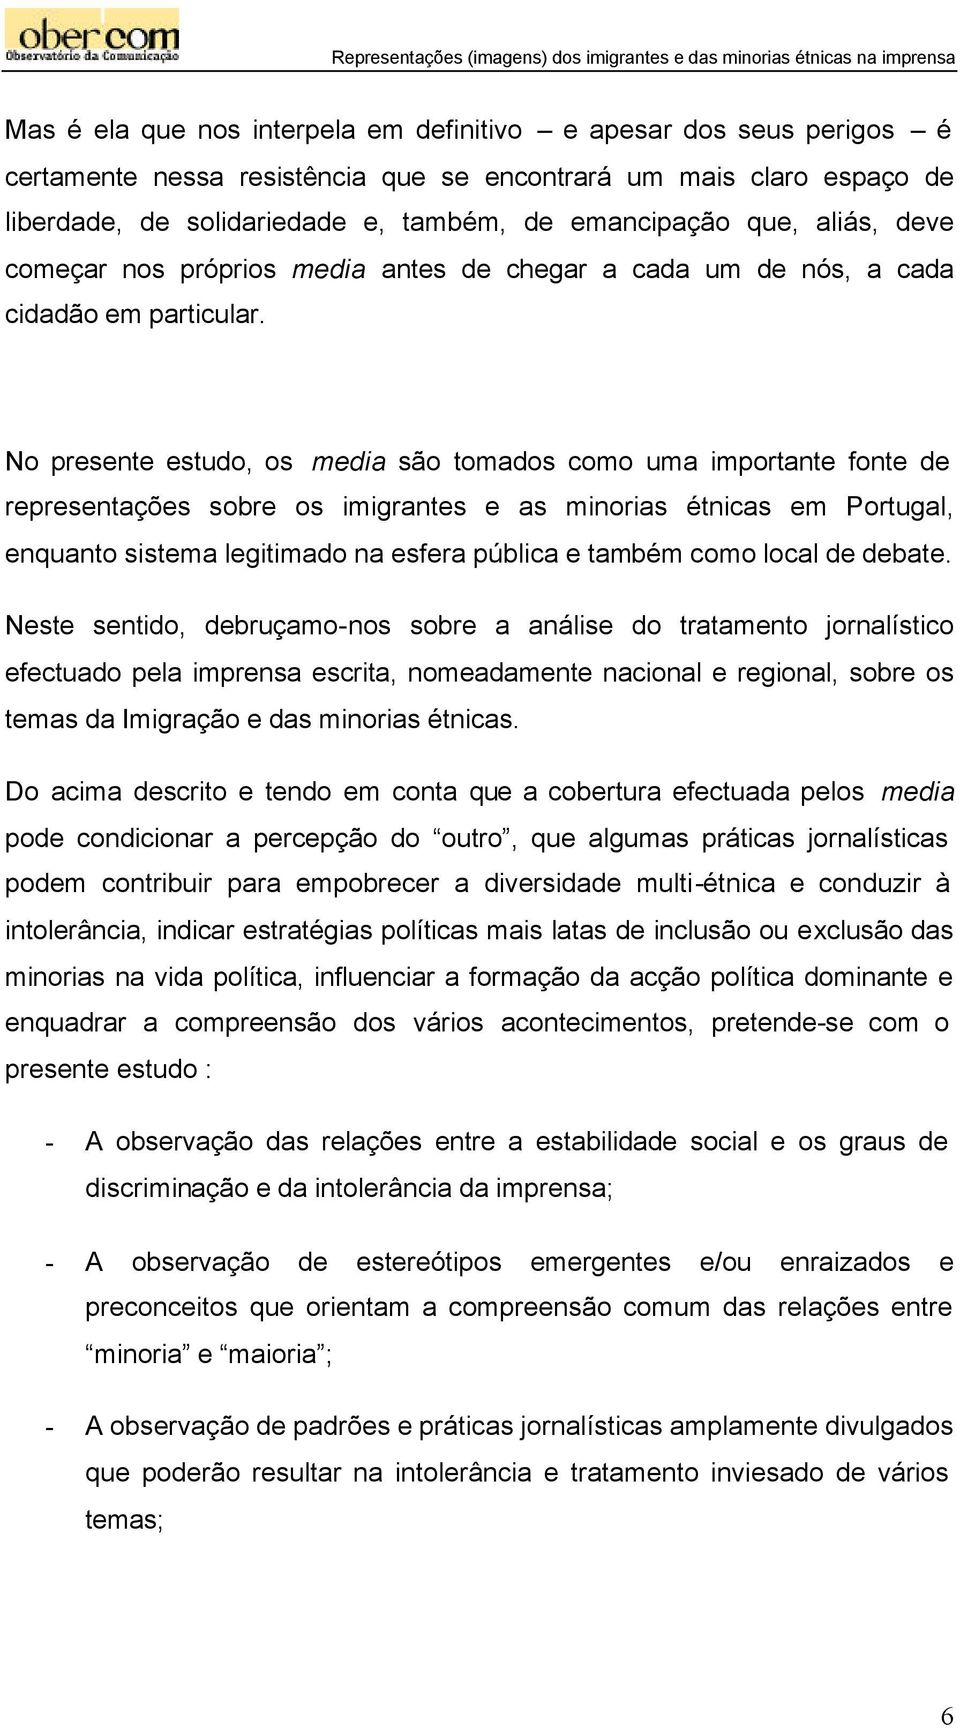 No presente estudo, os media são tomados como uma importante fonte de representações sobre os imigrantes e as minorias étnicas em Portugal, enquanto sistema legitimado na esfera pública e também como